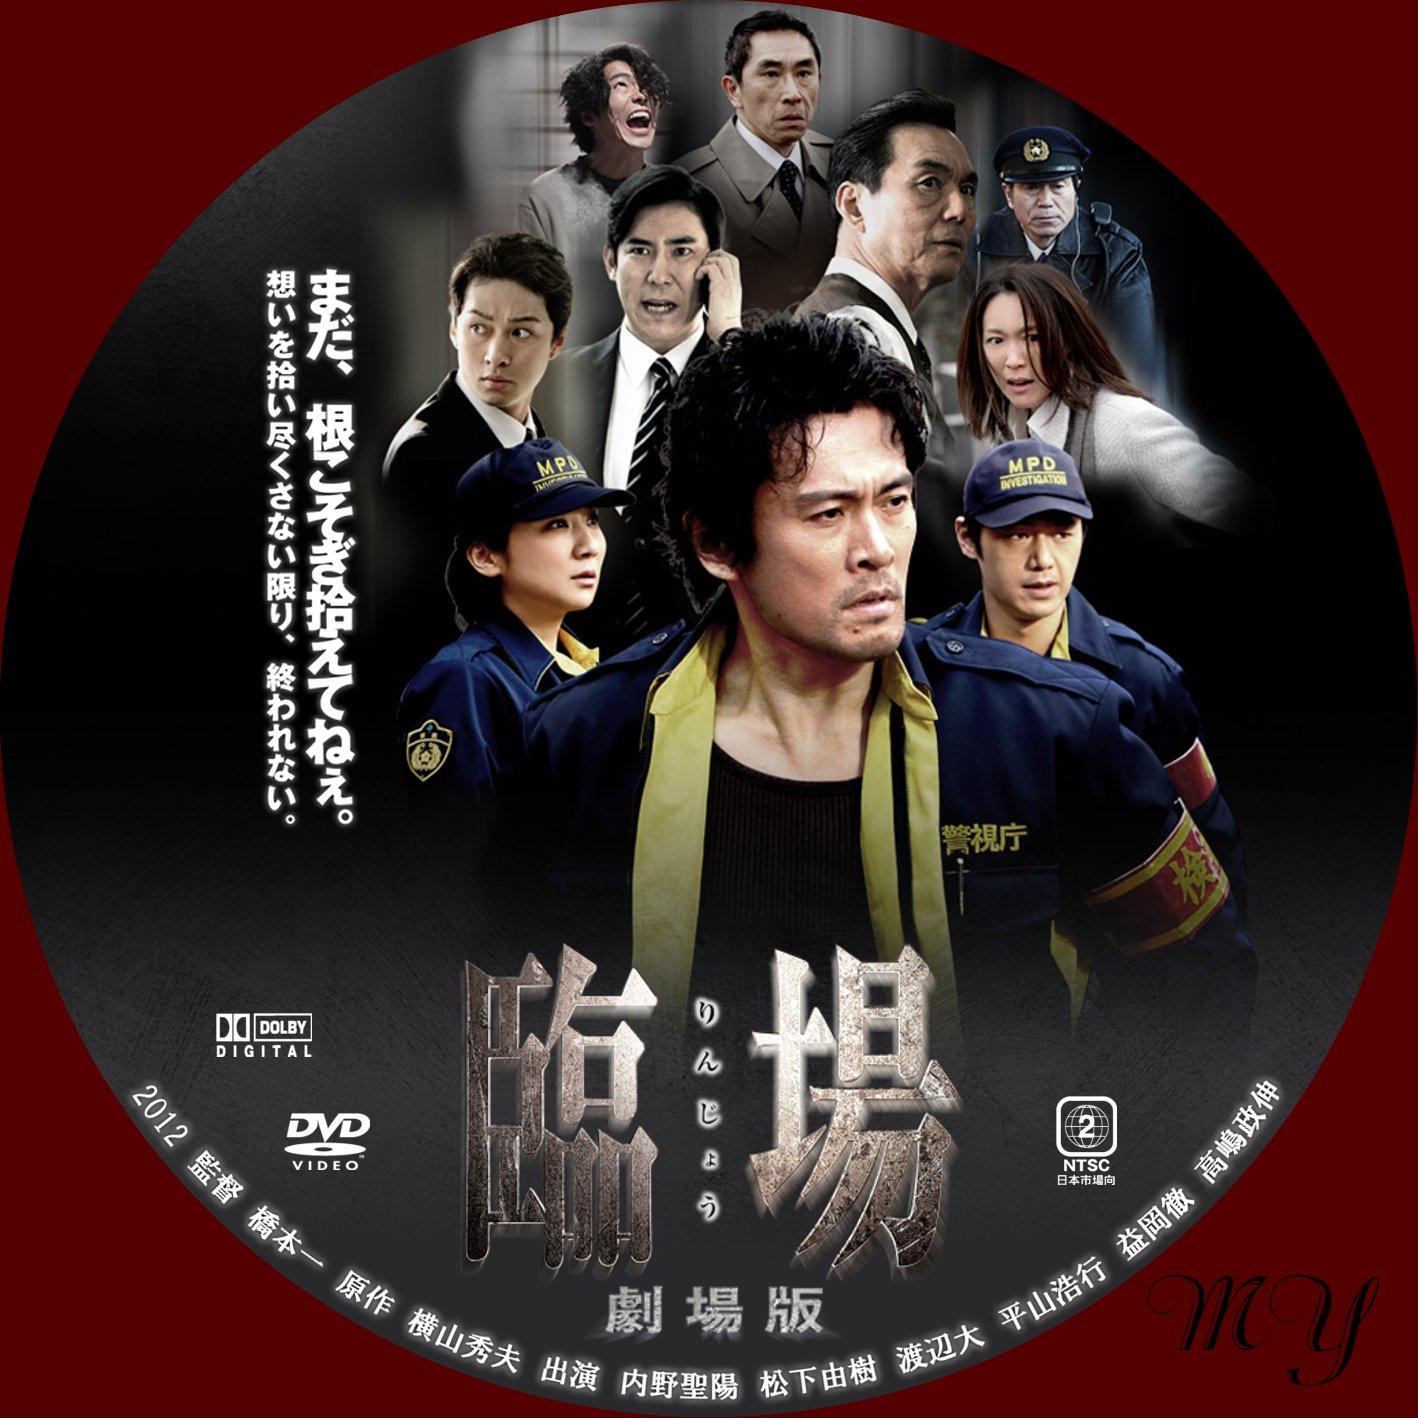 臨場 DVD‐BOX wyw801m